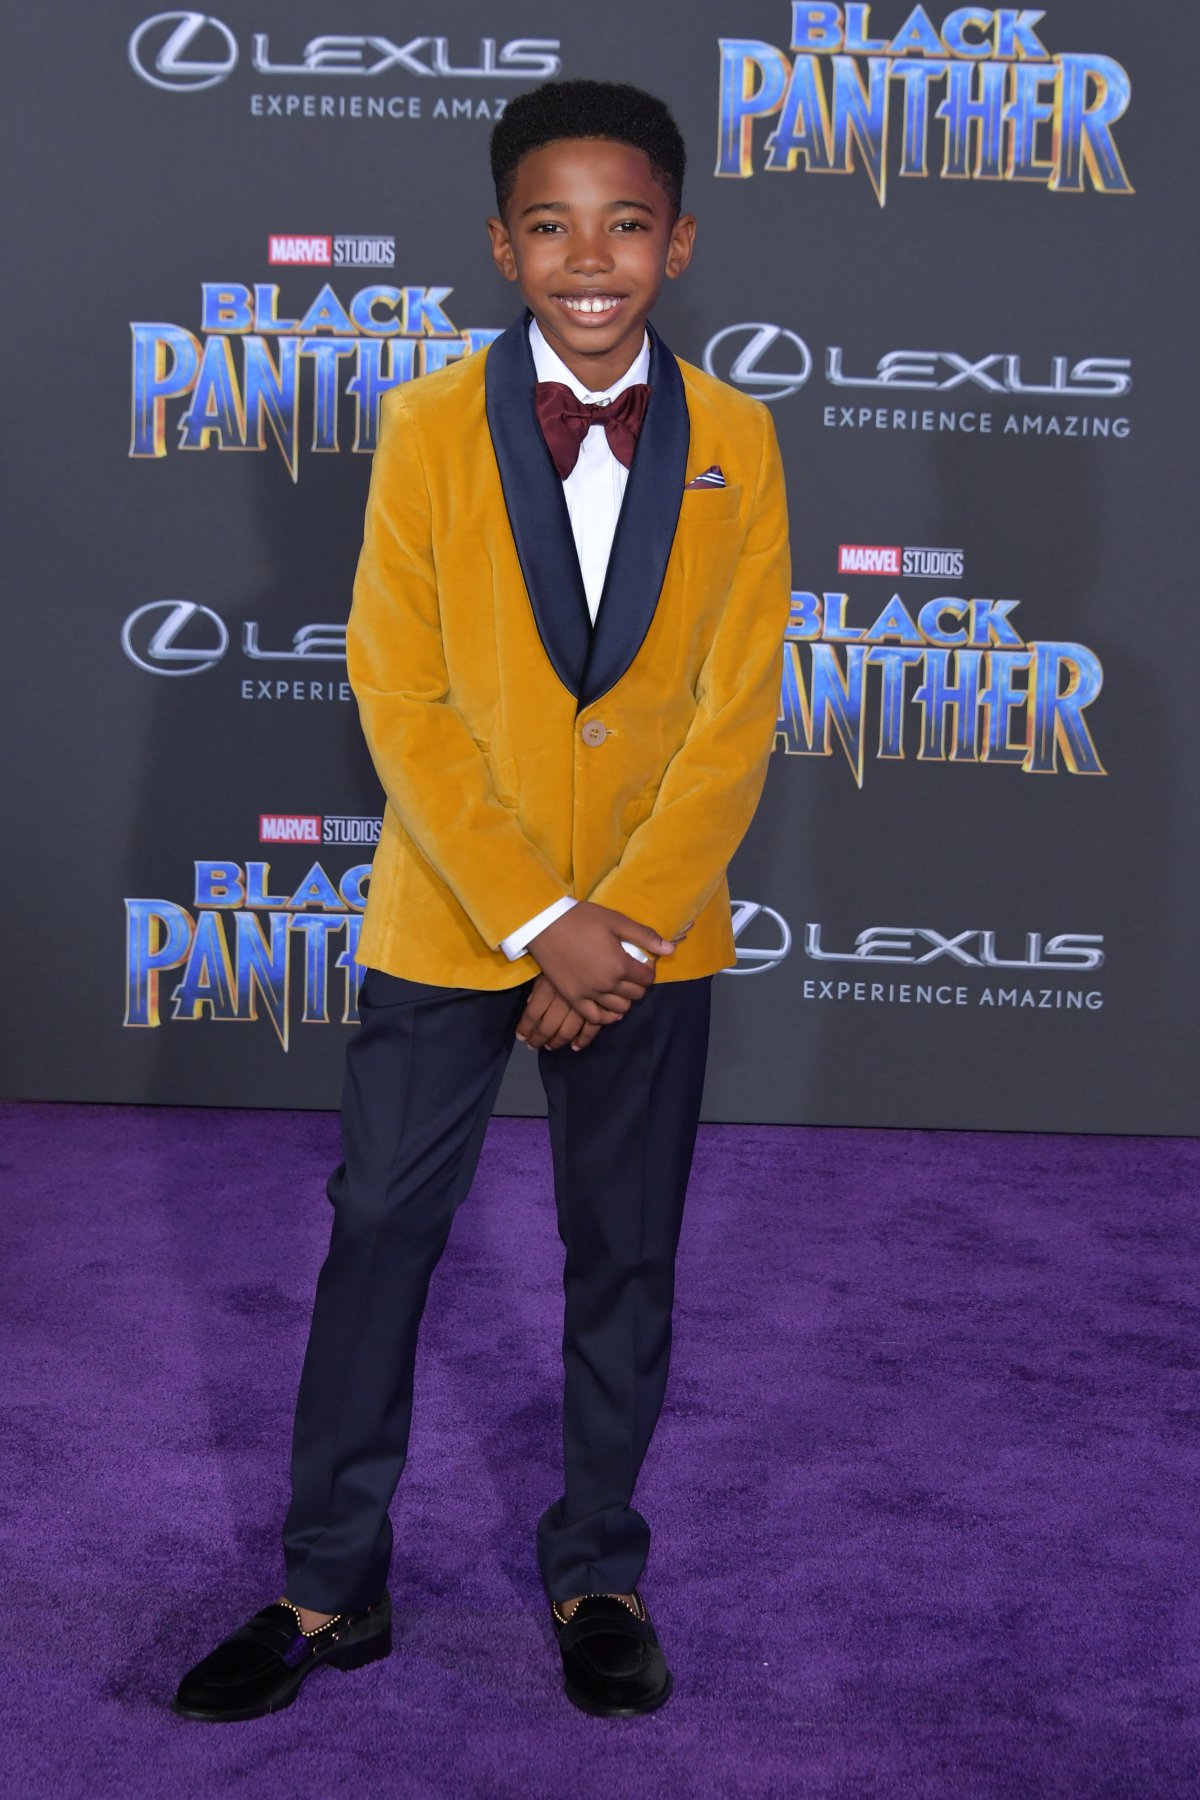 La alfombra roja del estreno mundial de Black Panther fue una fantasía